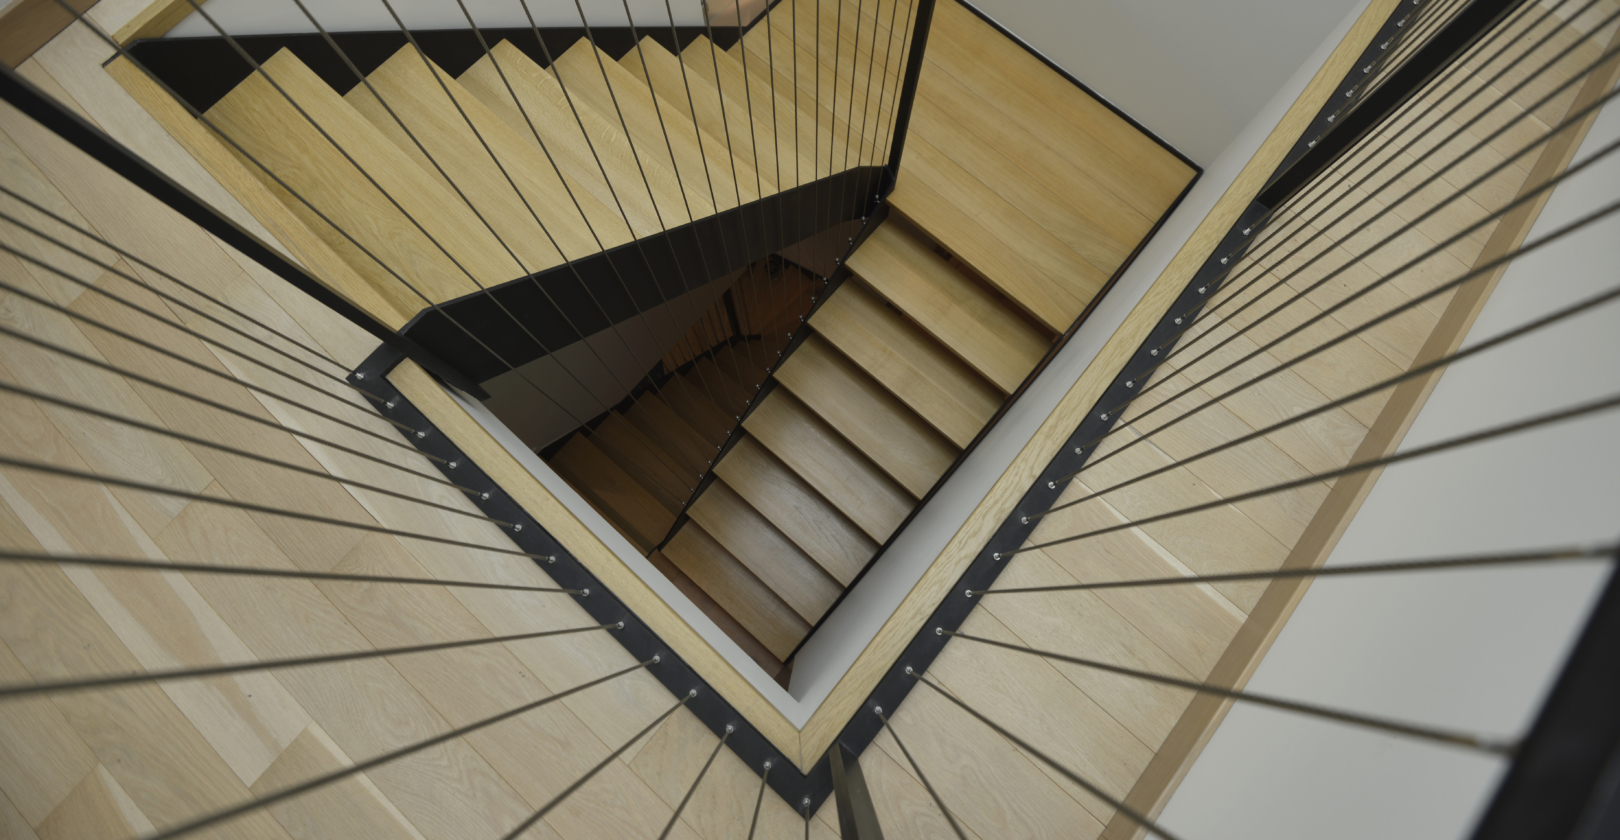 vue au coeur de l'escalier avec garde-corps inox cables tendus acier noir, marches bois, escalier double quart tournant